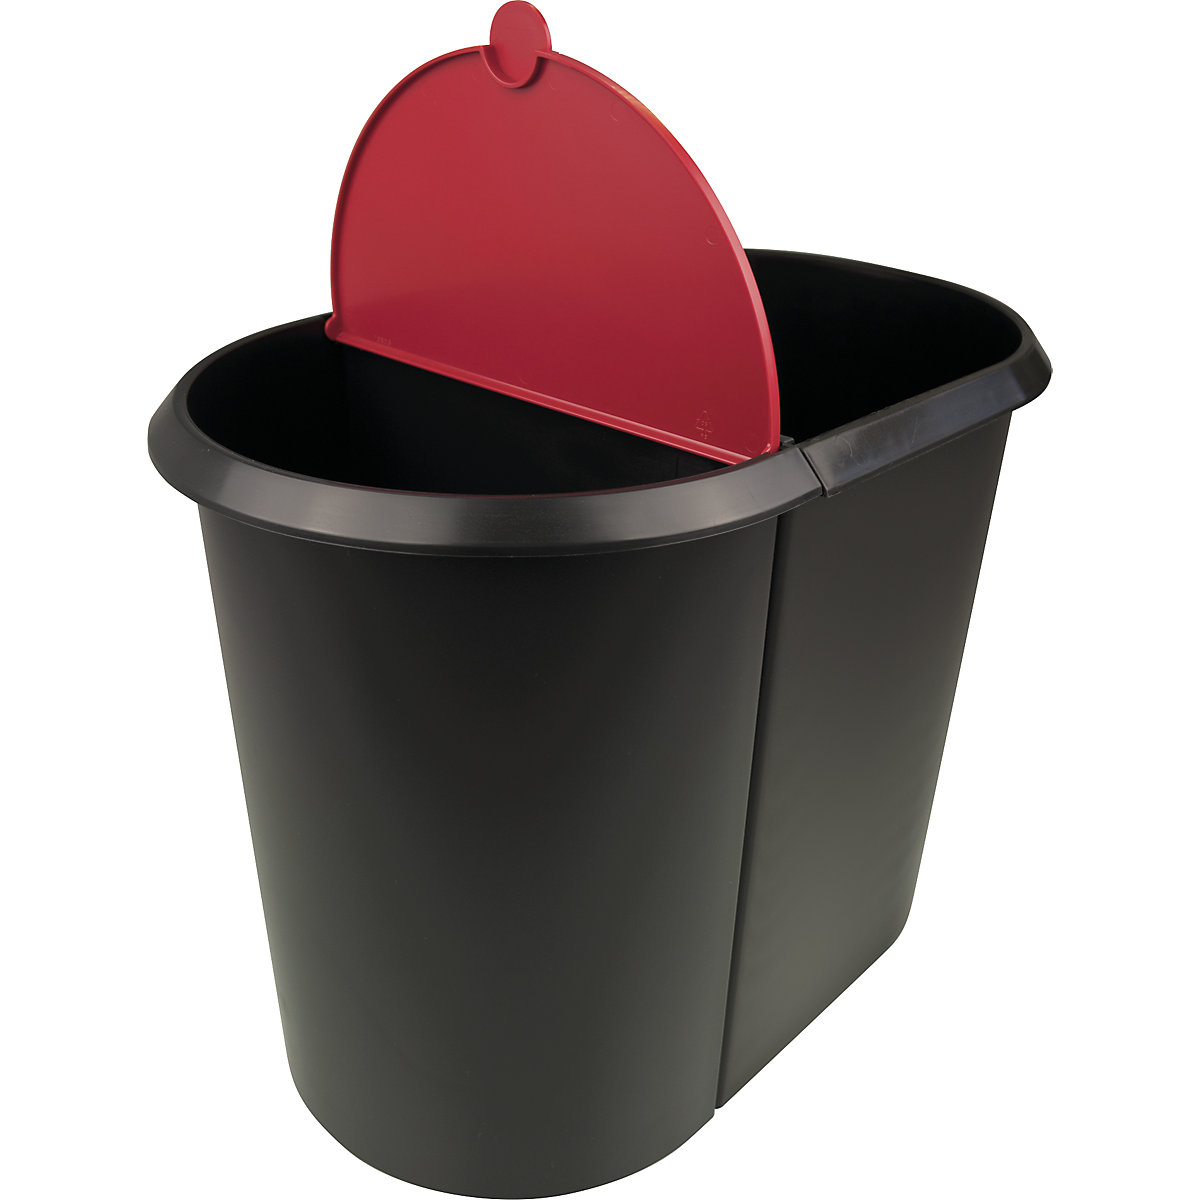 helit – Waste bin system (Product illustration 7)